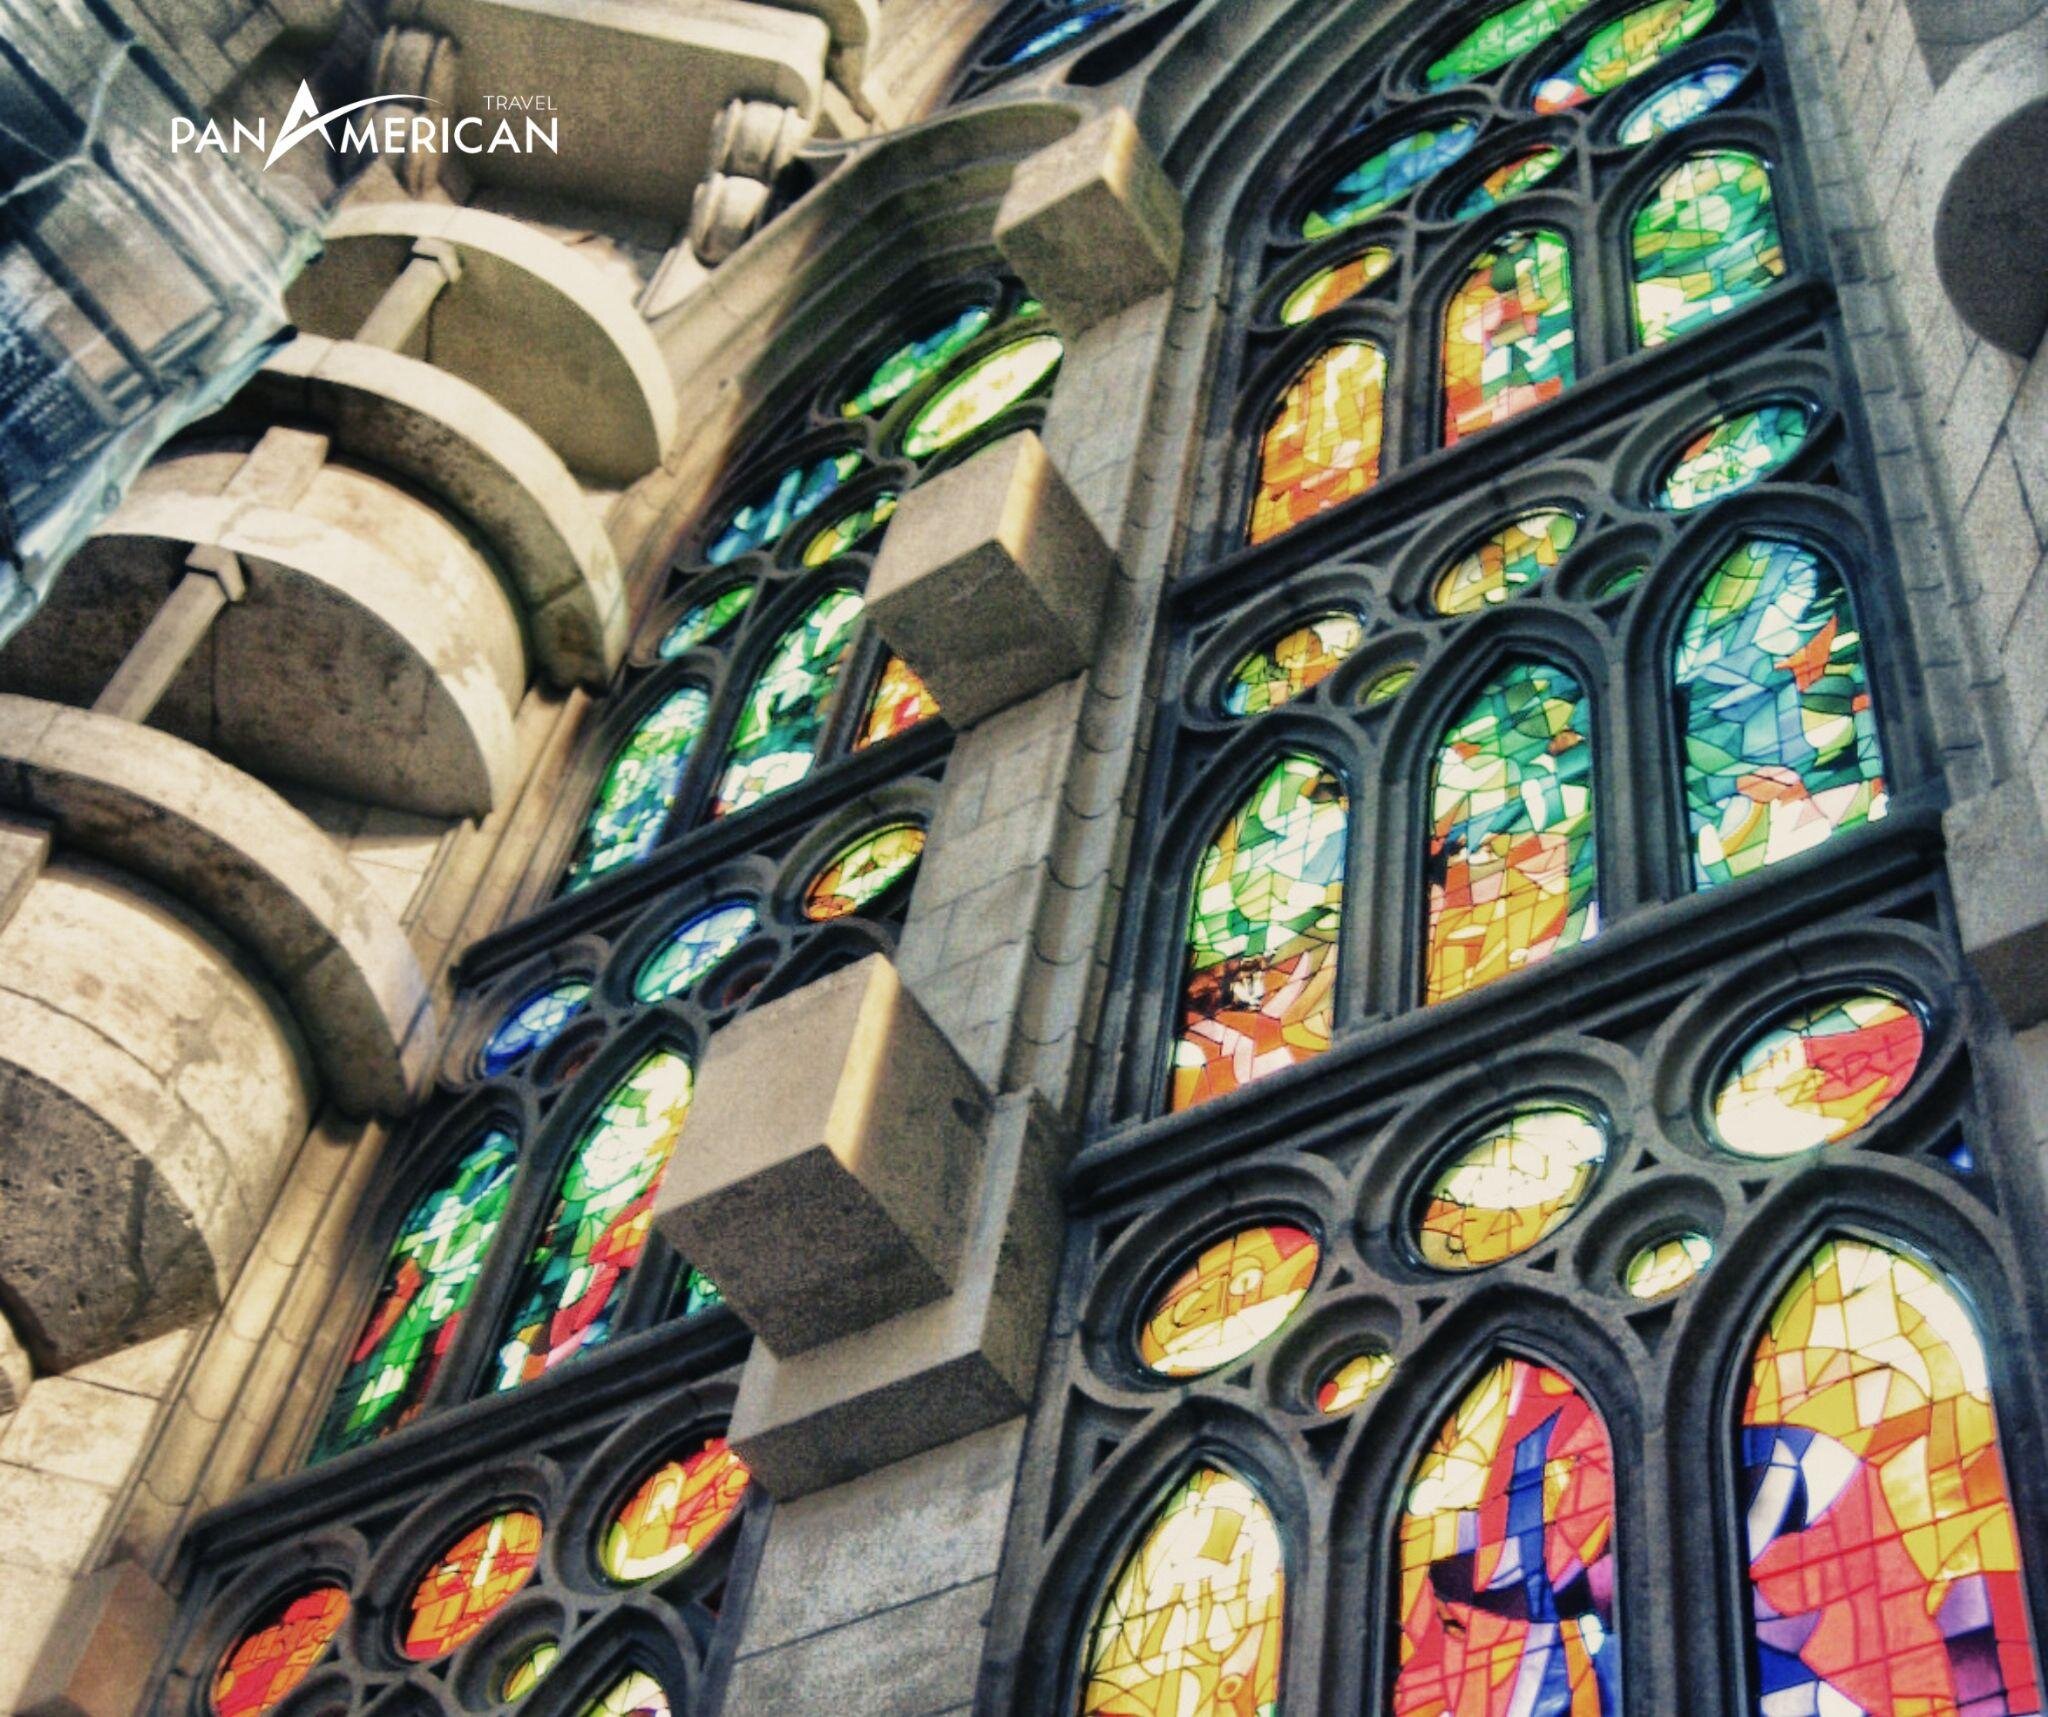 Những ô cửa kính màu sắc tạo nên vẻ đẹp cho thánh đường